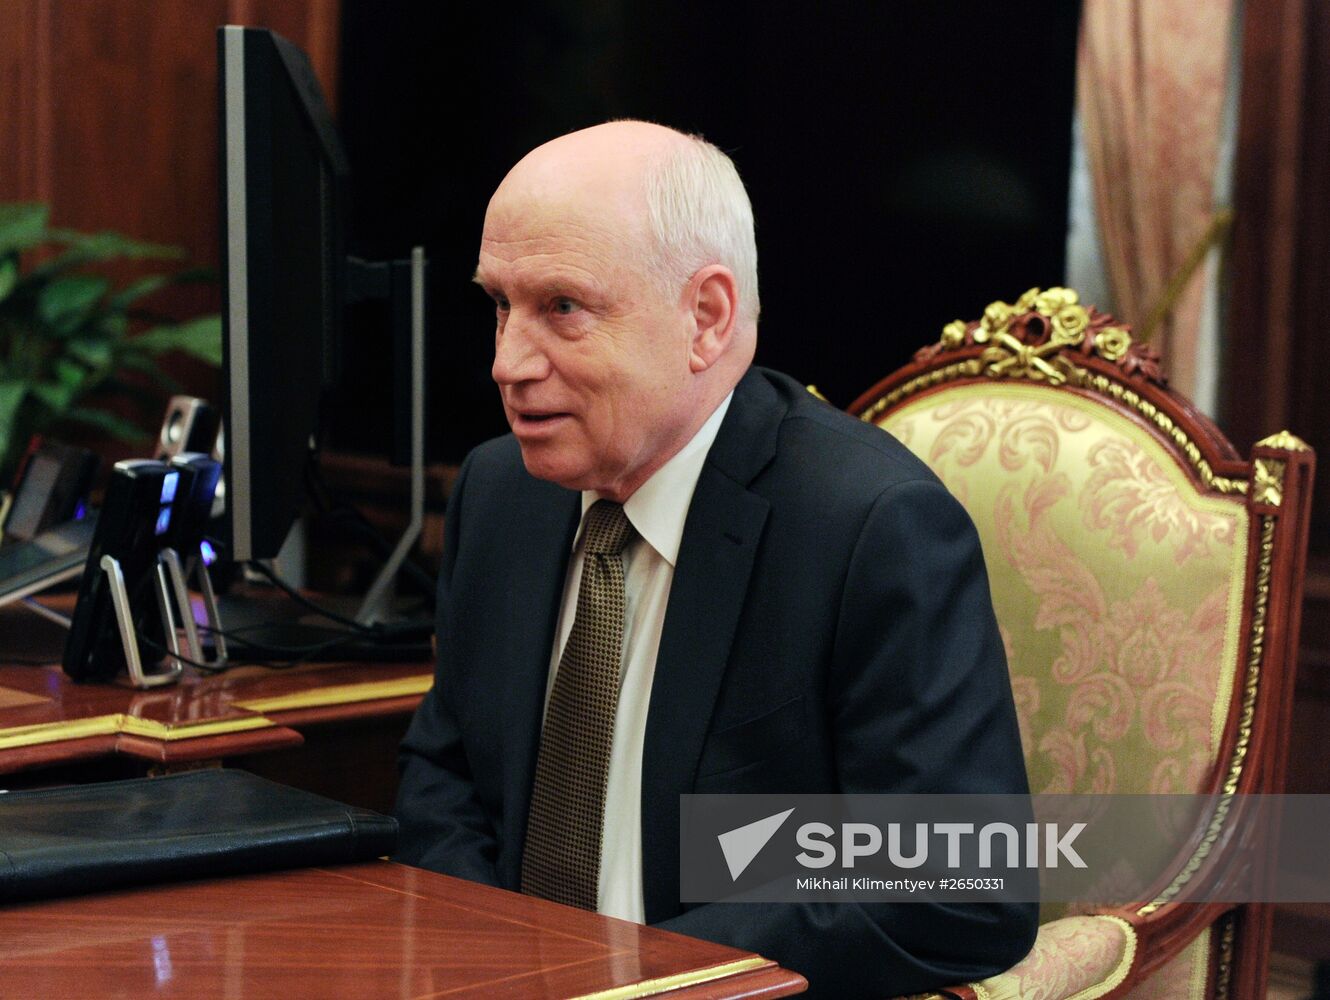 Vladimir Putin meets with CIS Executive Secretary Sergei Lebedev